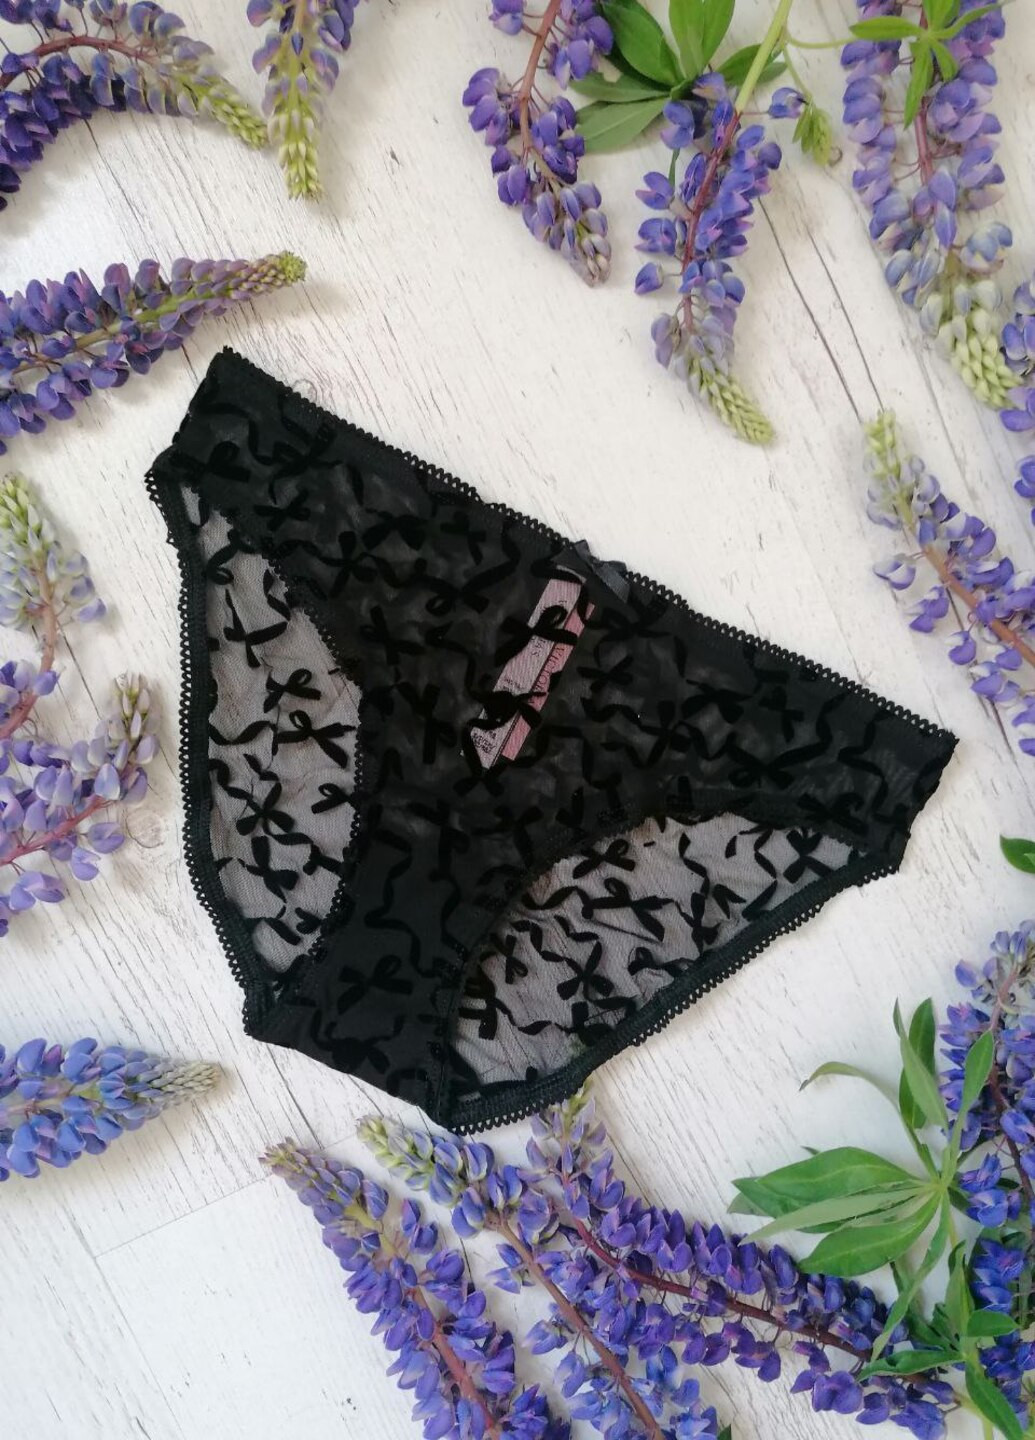 Трусики мереживні, орнамент бантик Victoria's Secret bikini (267419302)